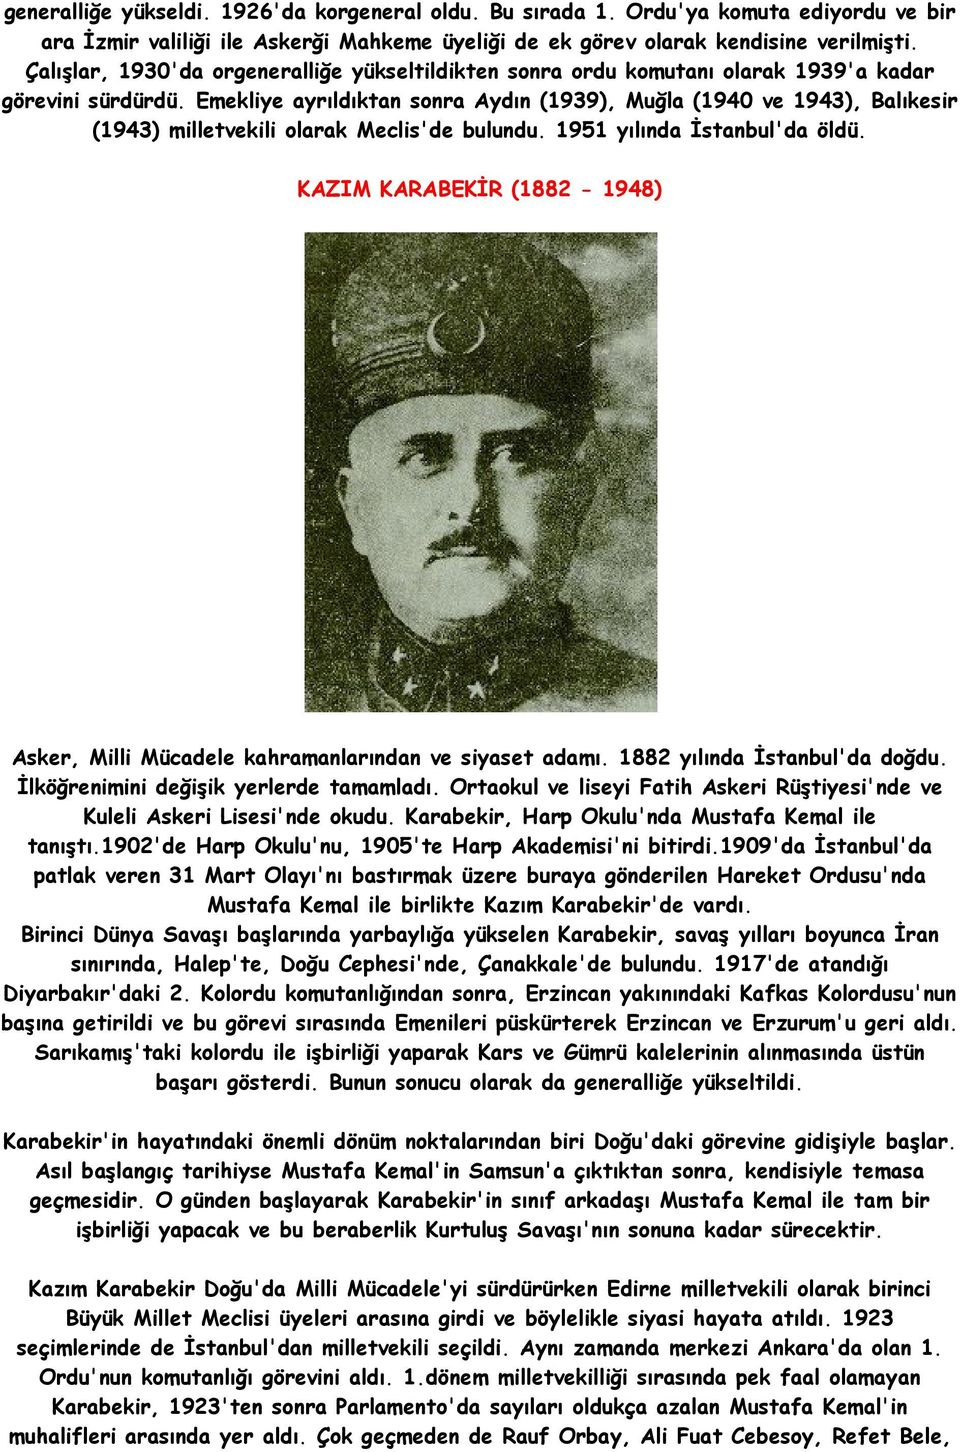 Emekliye ayrıldıktan sonra Aydın (1939), Muğla (1940 ve 1943), Balıkesir (1943) milletvekili olarak Meclis'de bulundu. 1951 yılında İstanbul'da öldü.